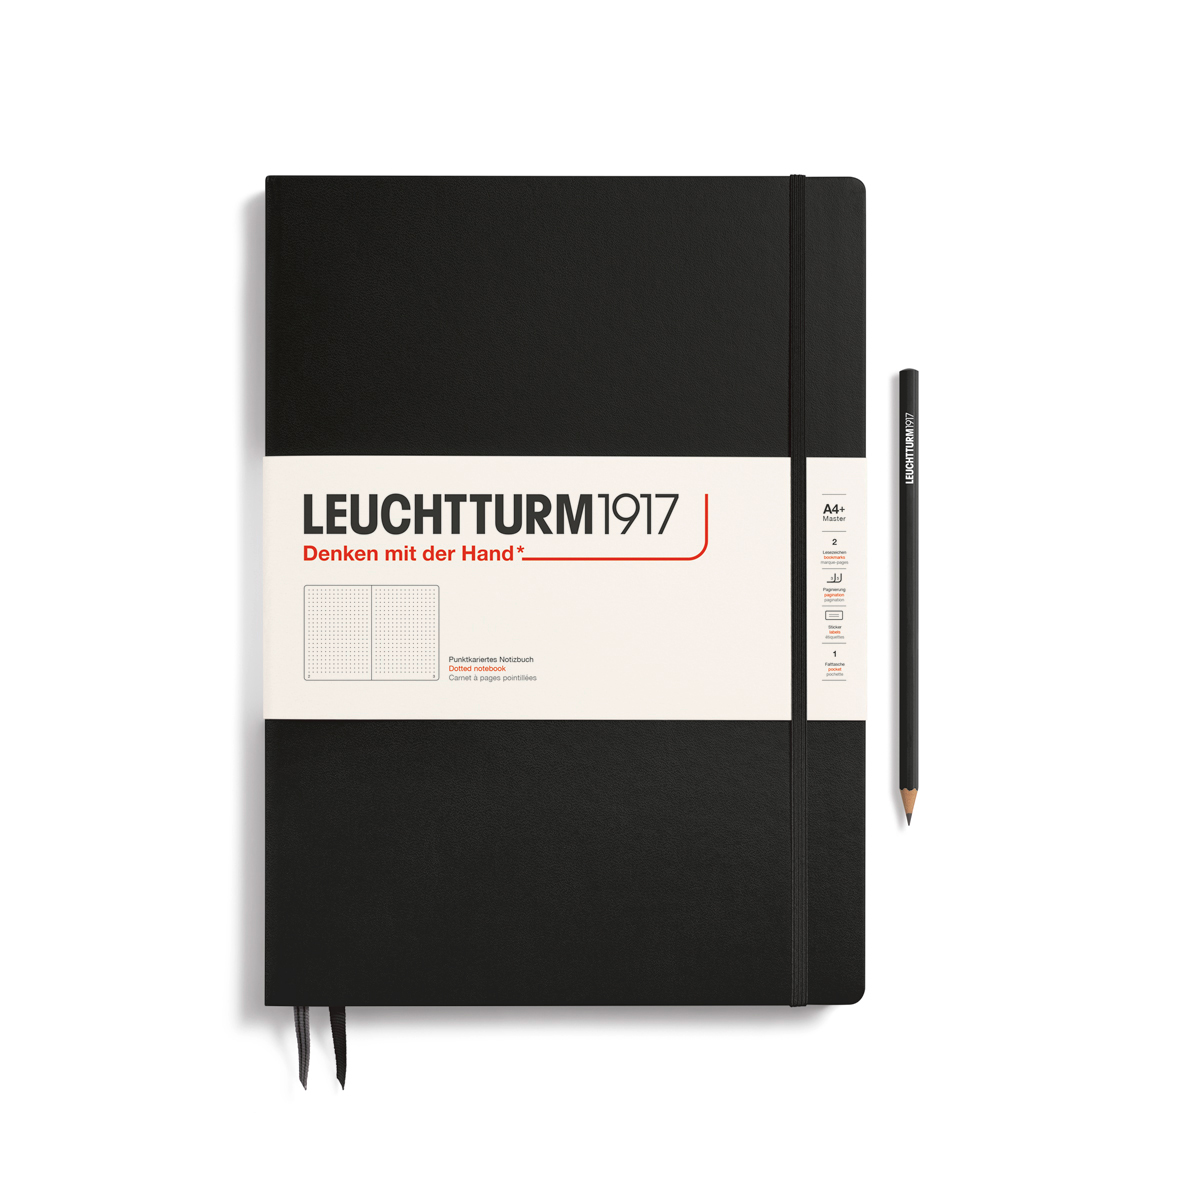 Записная книжка в точку Leuchtturm Master Slim А4+ 123 стр., твердая обложка черная записная книжка в линейку leuchtturm master a4 235 стр твердая обложка темно синяя